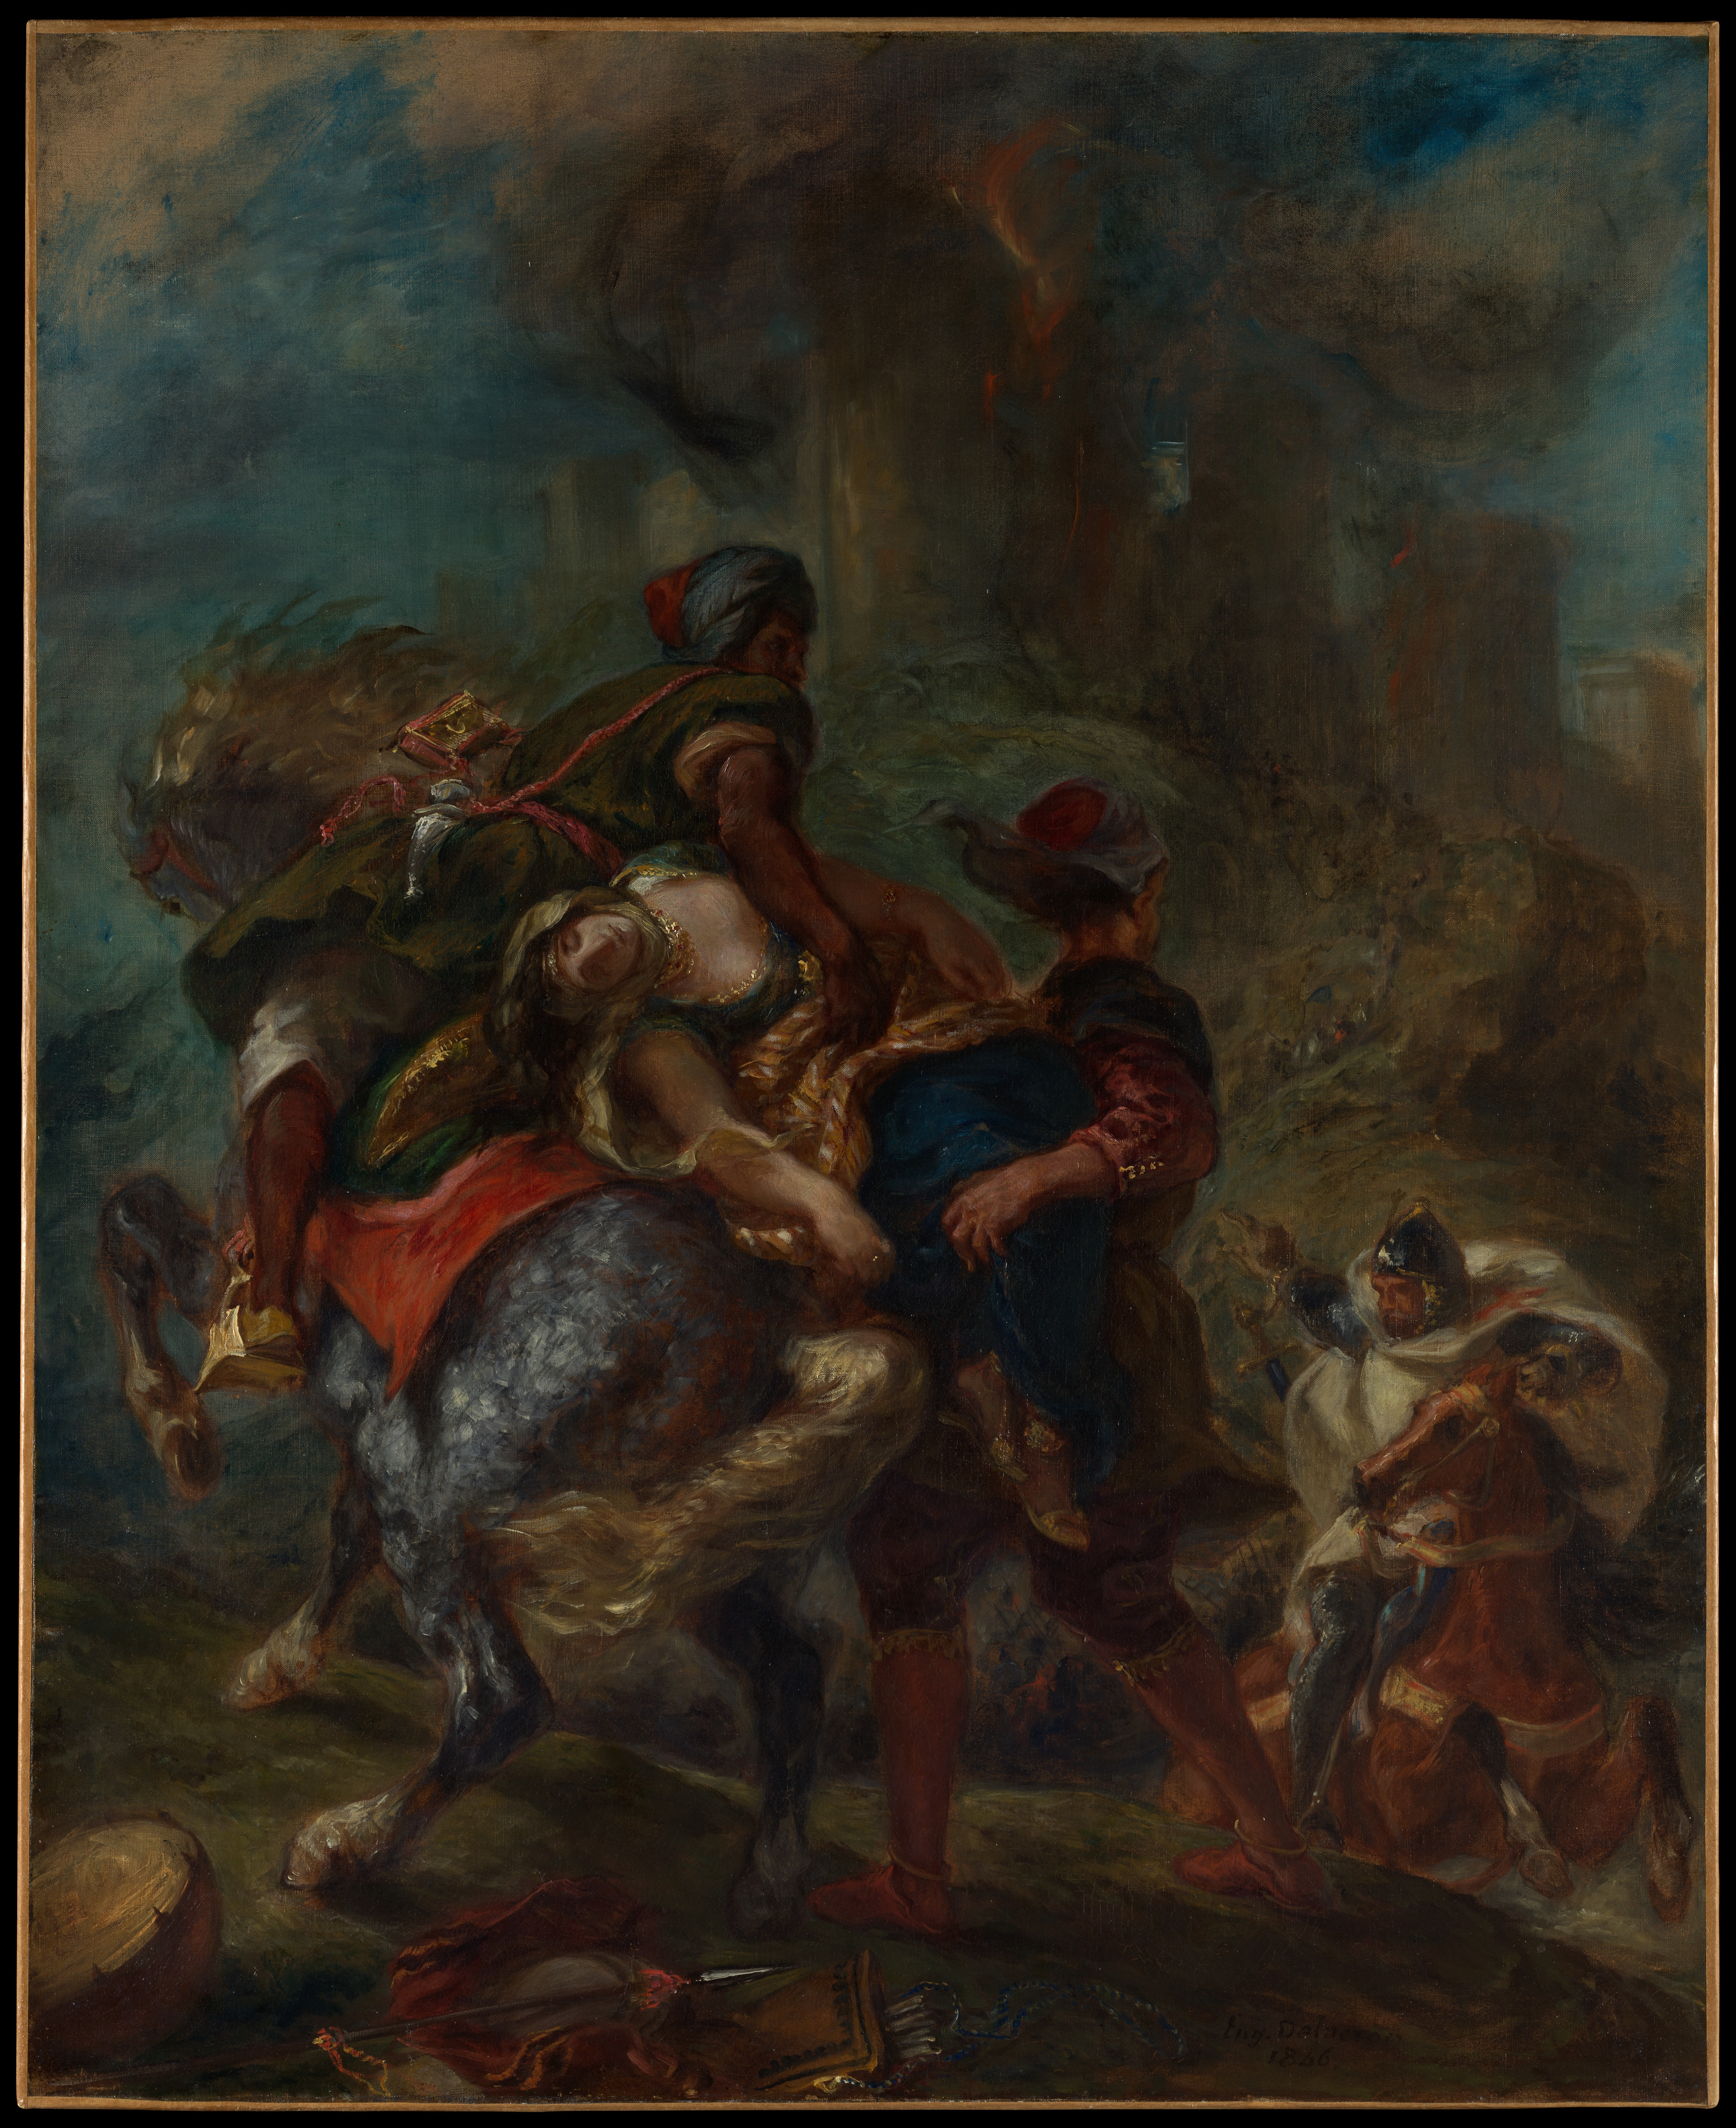 Il rapimento di Rebecca by Eugène Delacroix - 1846 - 100.3 x 81.9 cm 